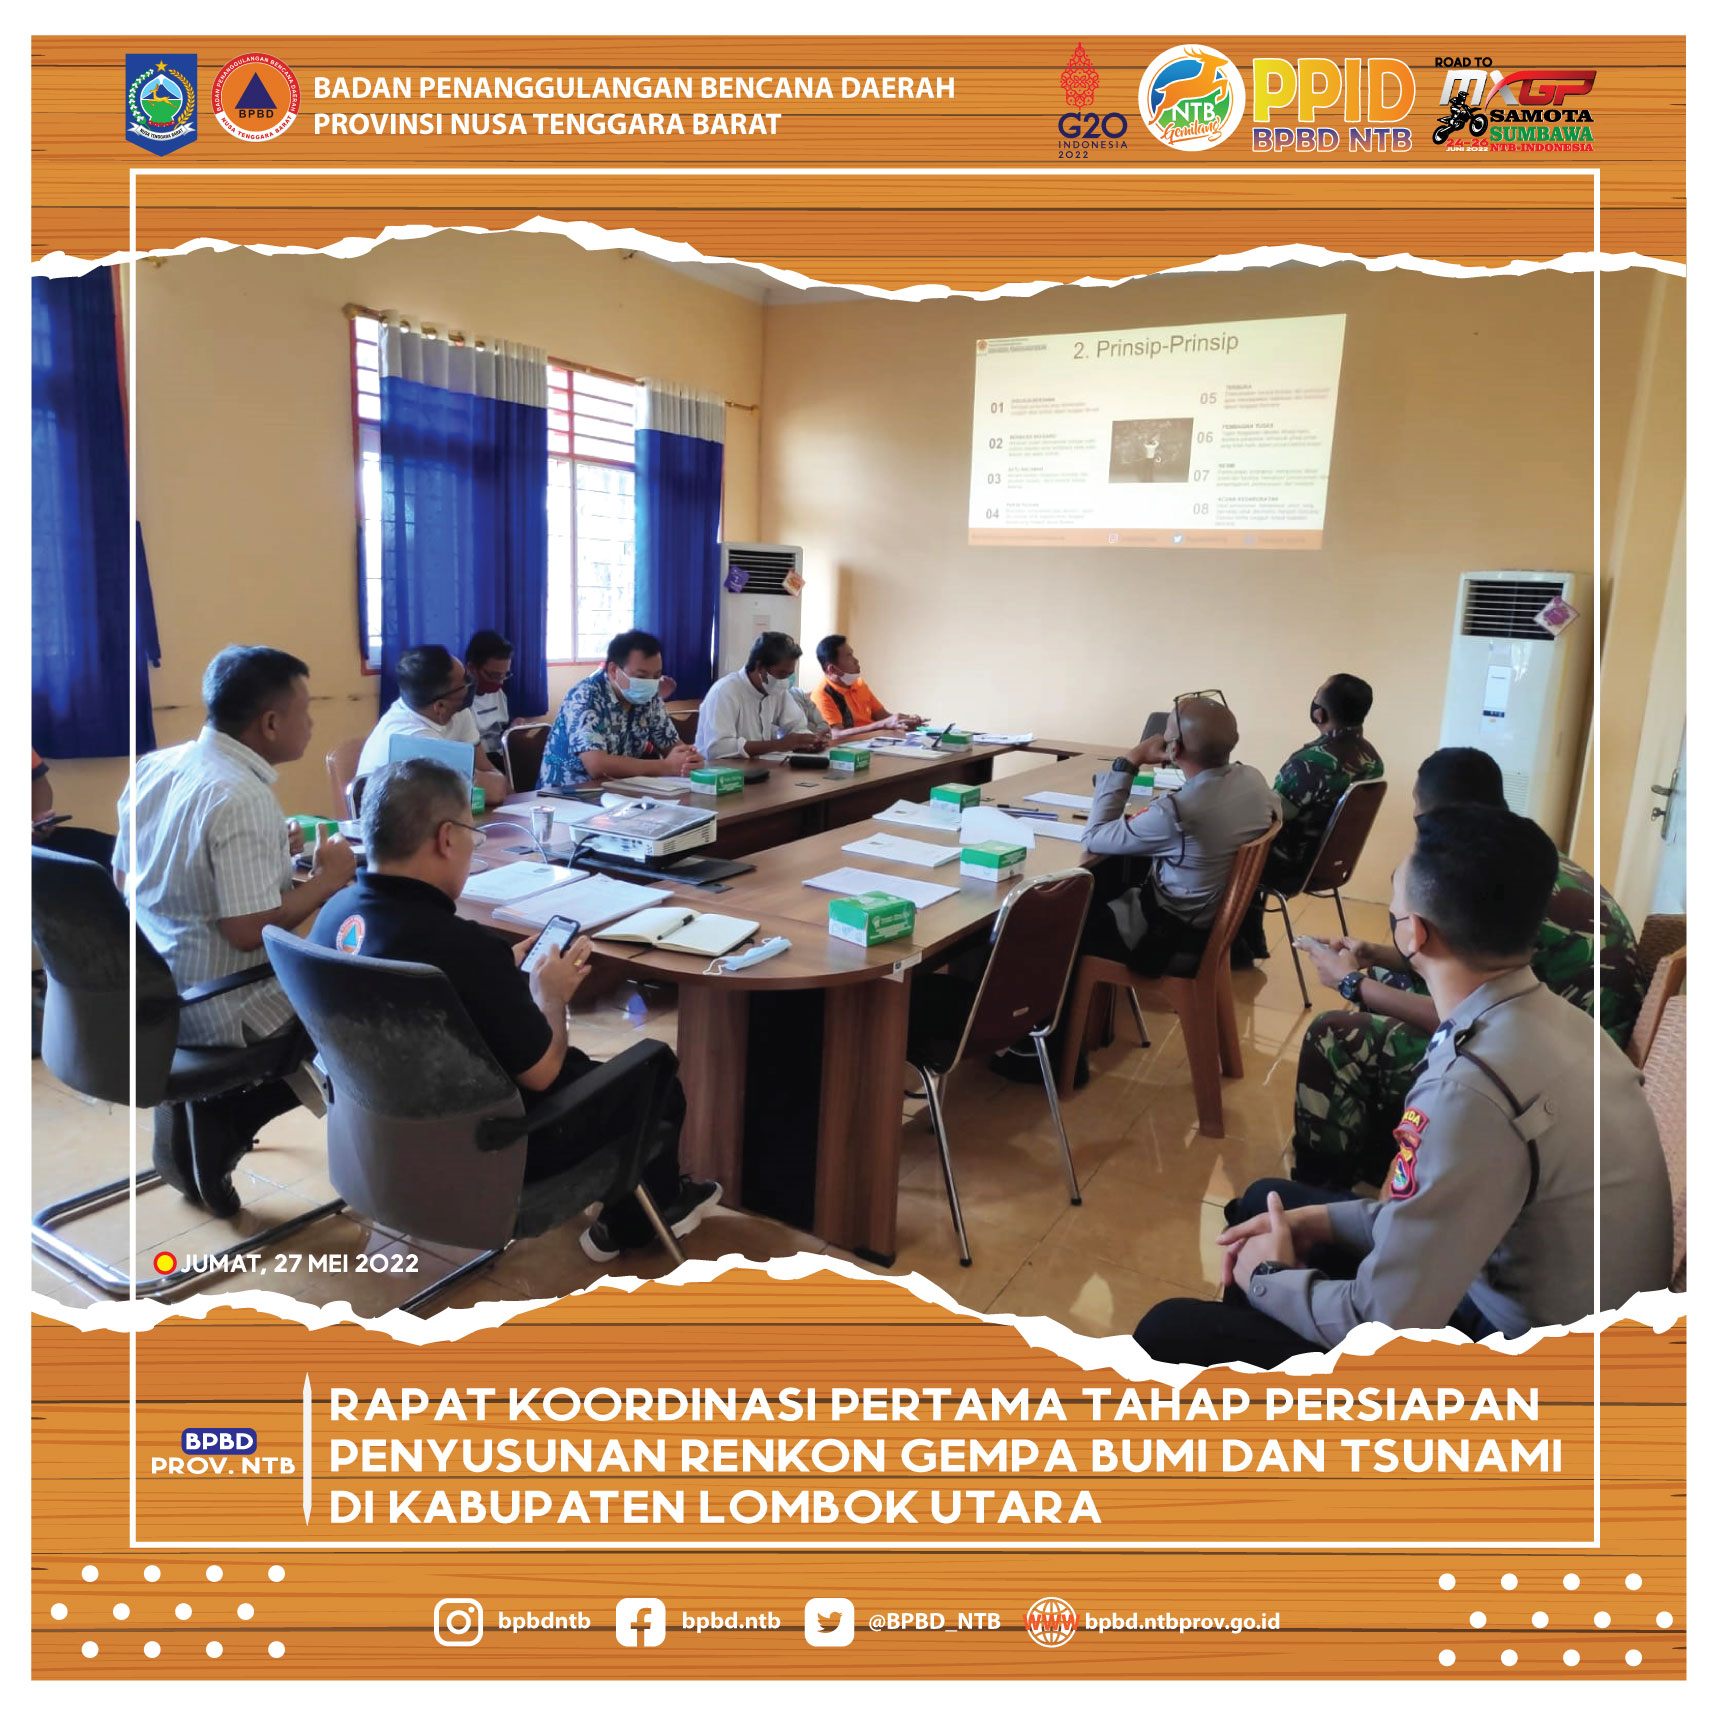 Rapat Koordinasi Pertama Tahap Persiapan Penyusunan Renkon Gempa Bumi dan Tsunami di Kabupaten Lombok Utara (Jumat, 27 Mei 2022)